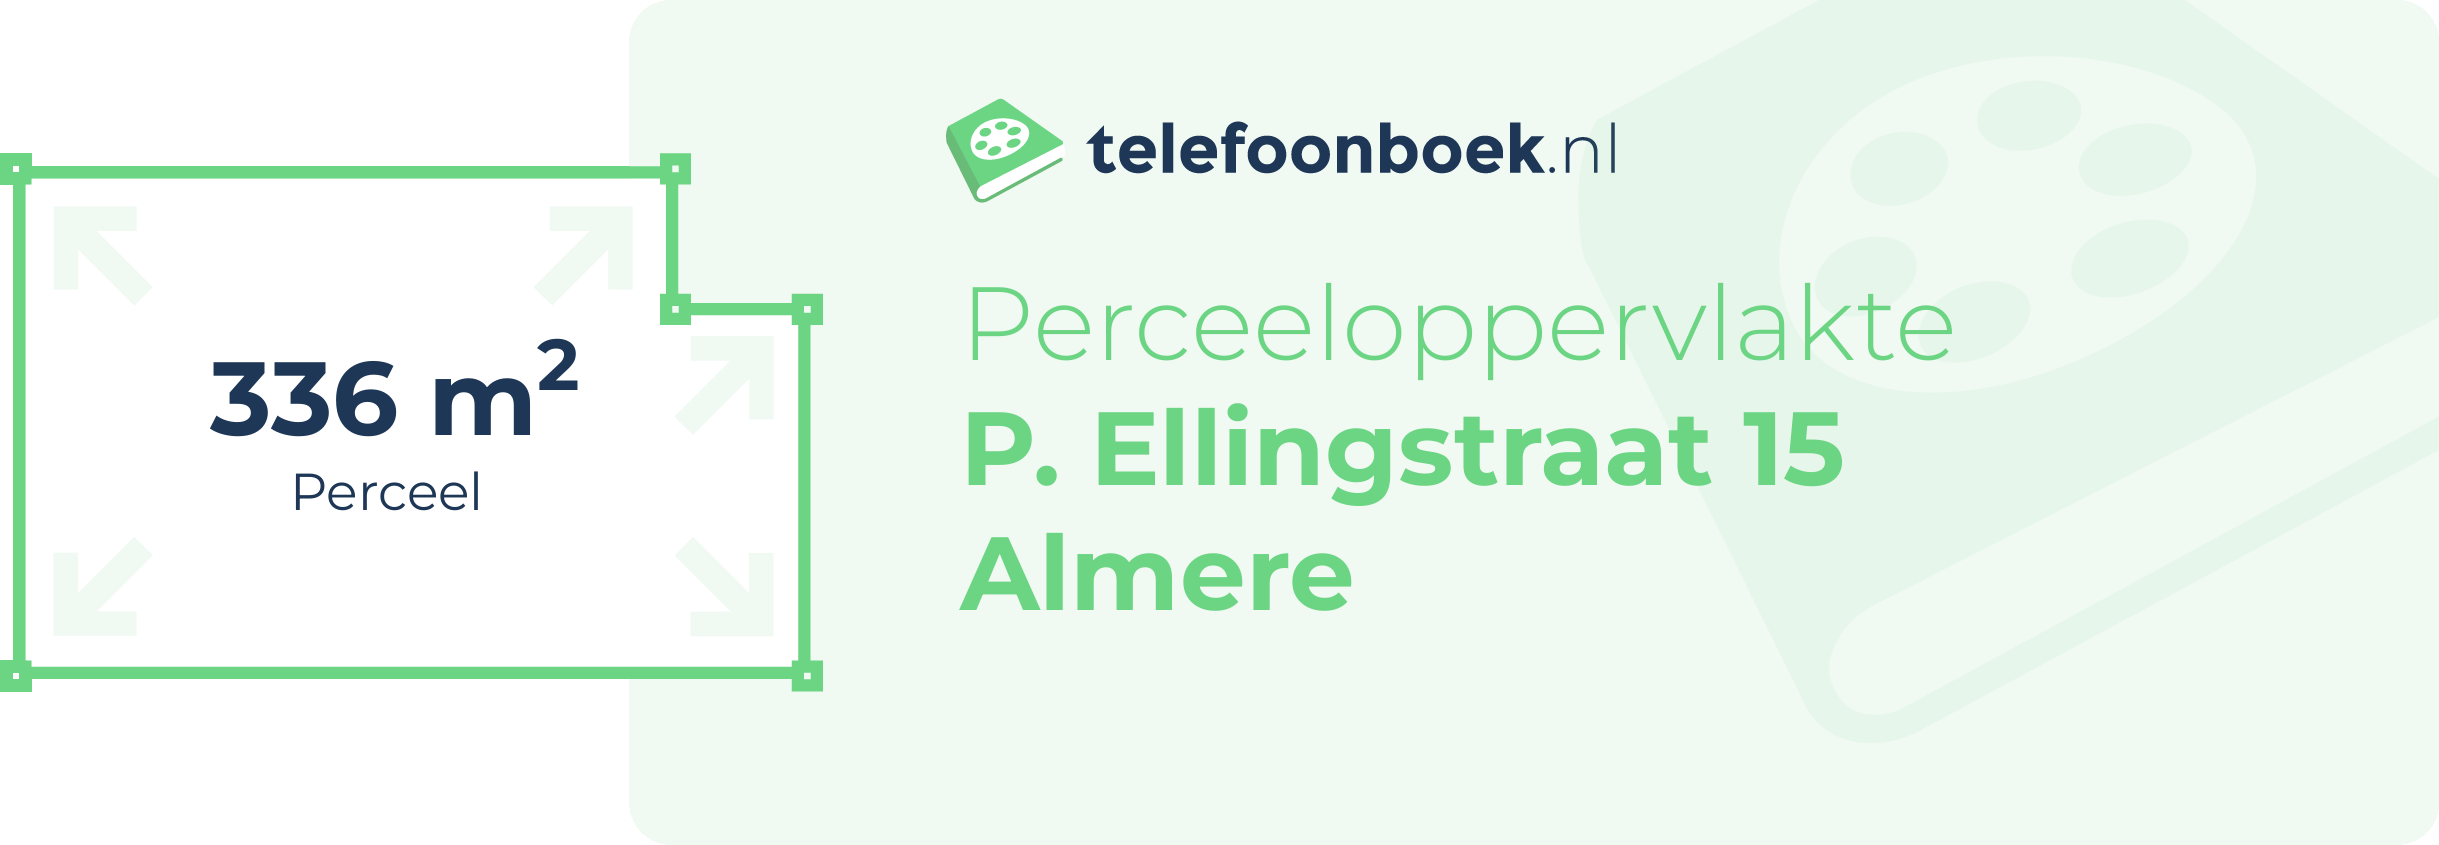 Perceeloppervlakte P. Ellingstraat 15 Almere